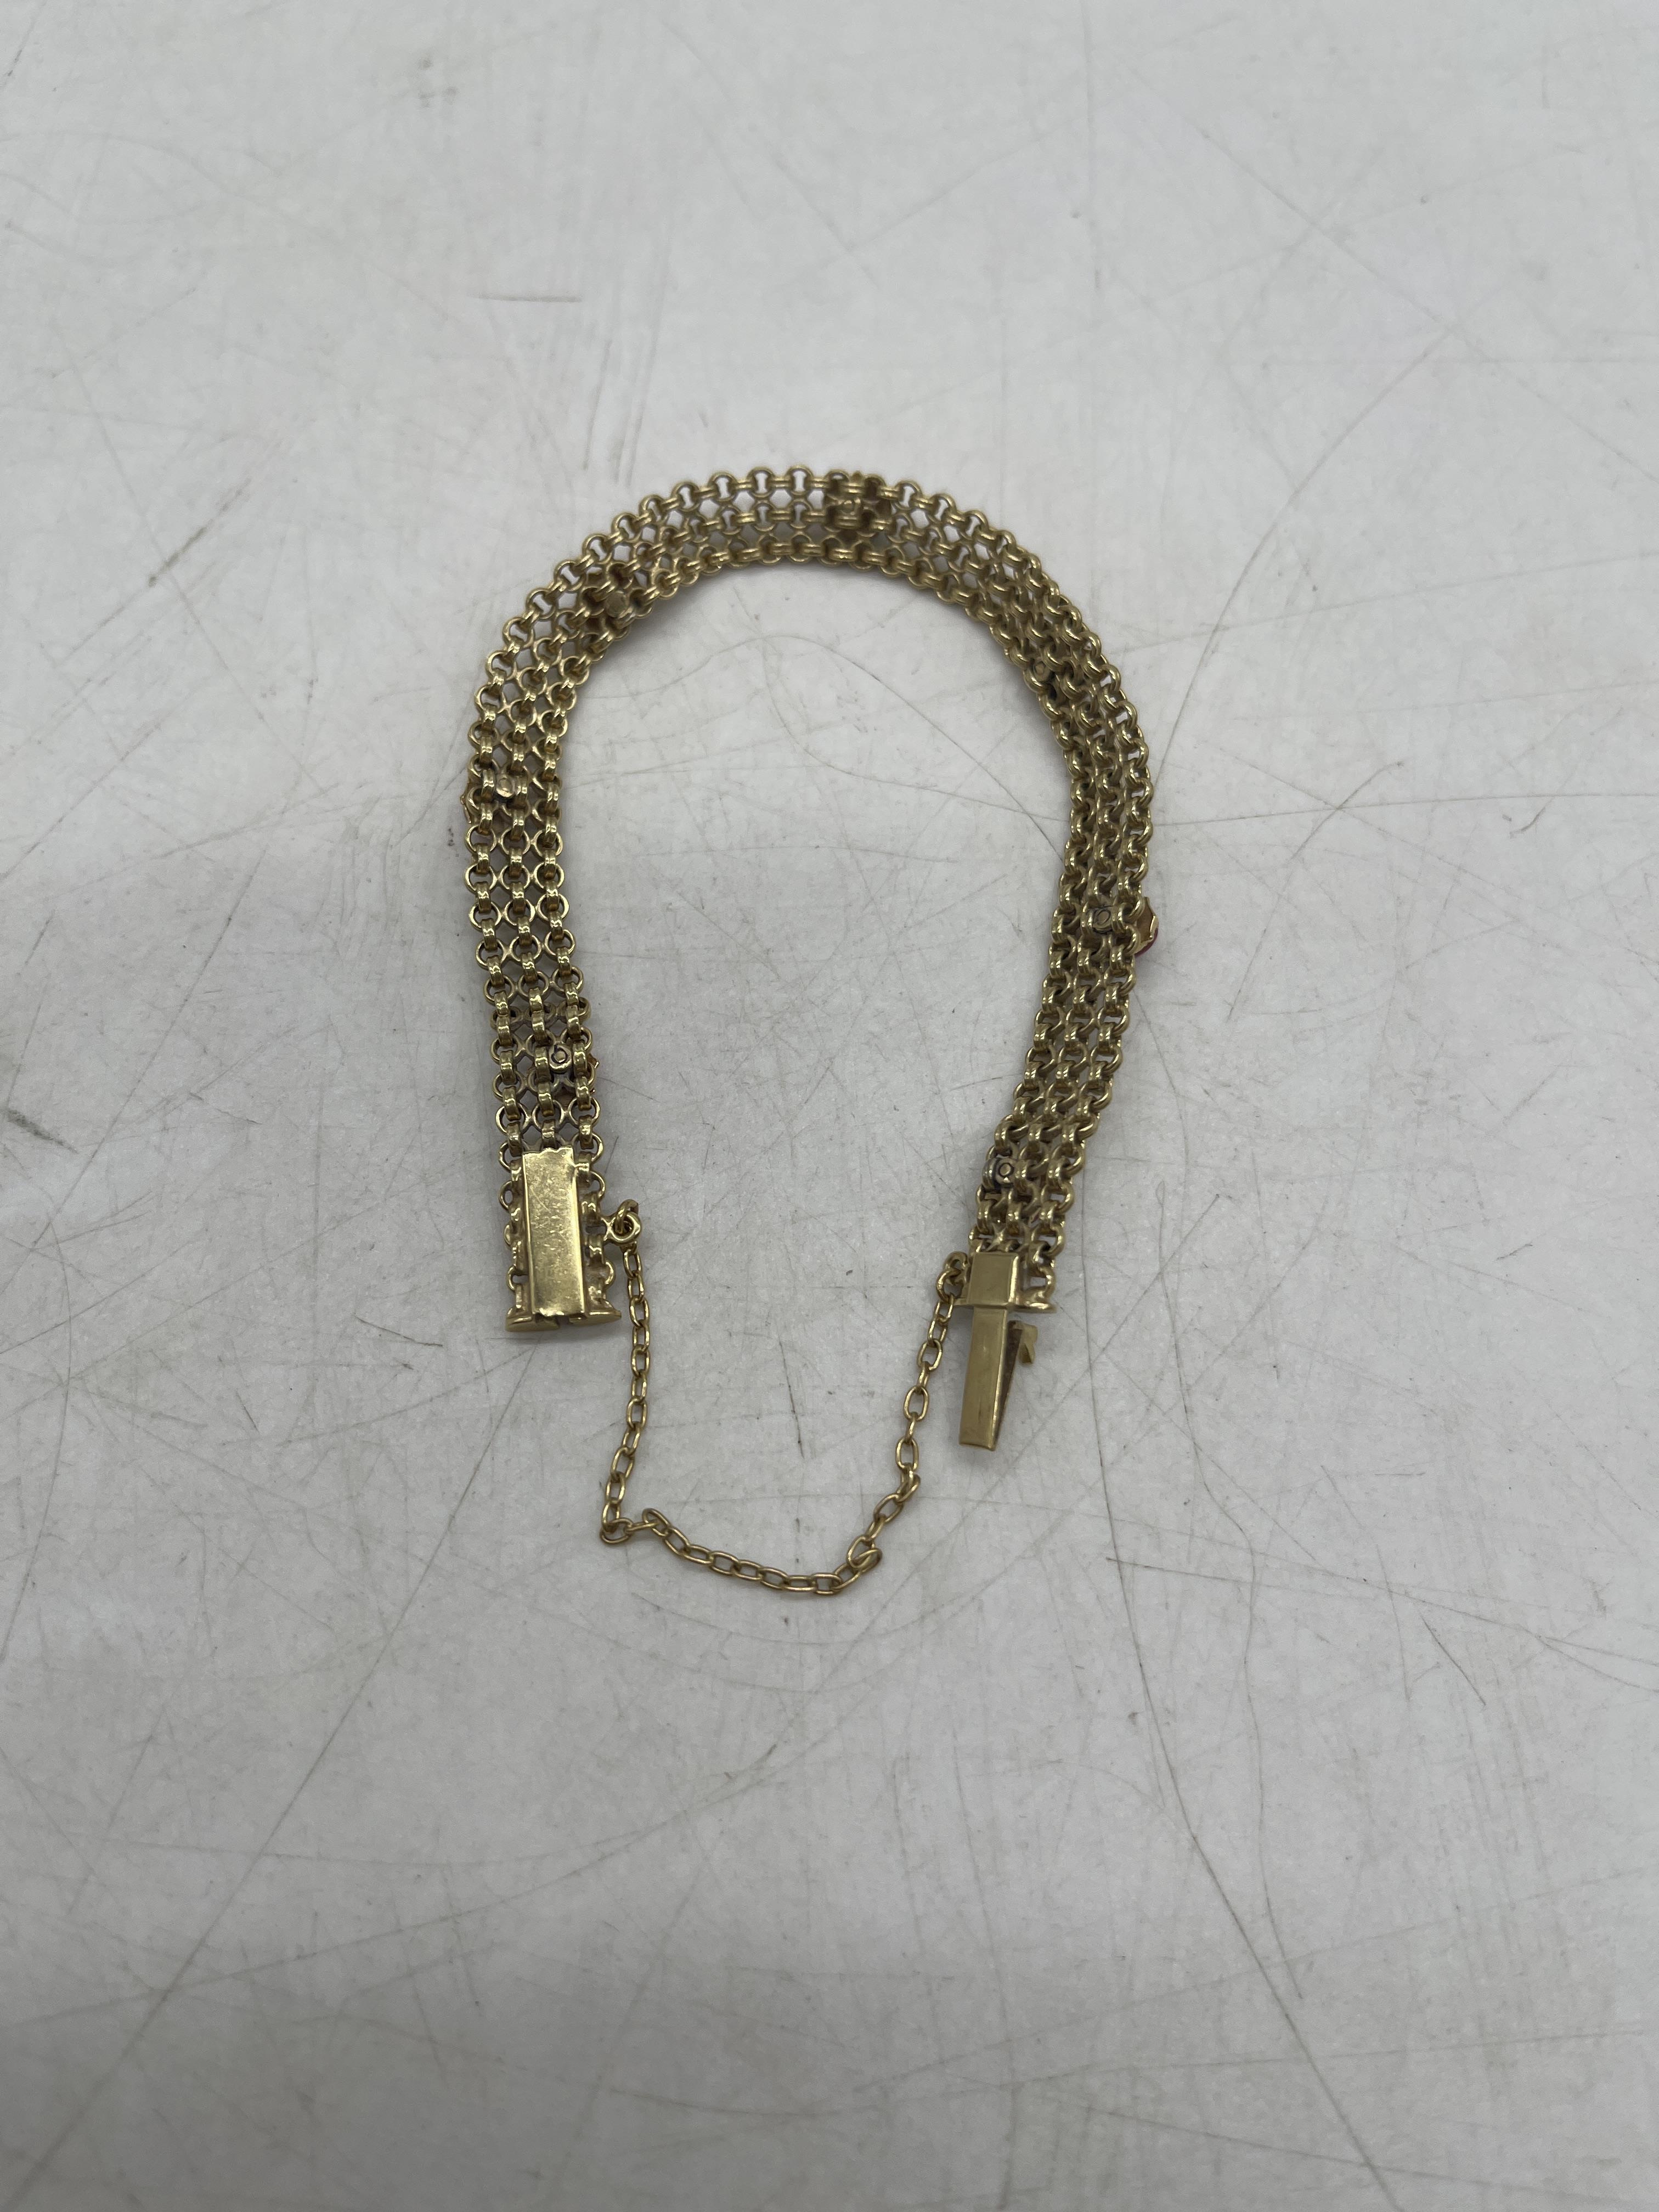 9ct Gold Ladybug Bracelet. - Image 6 of 6